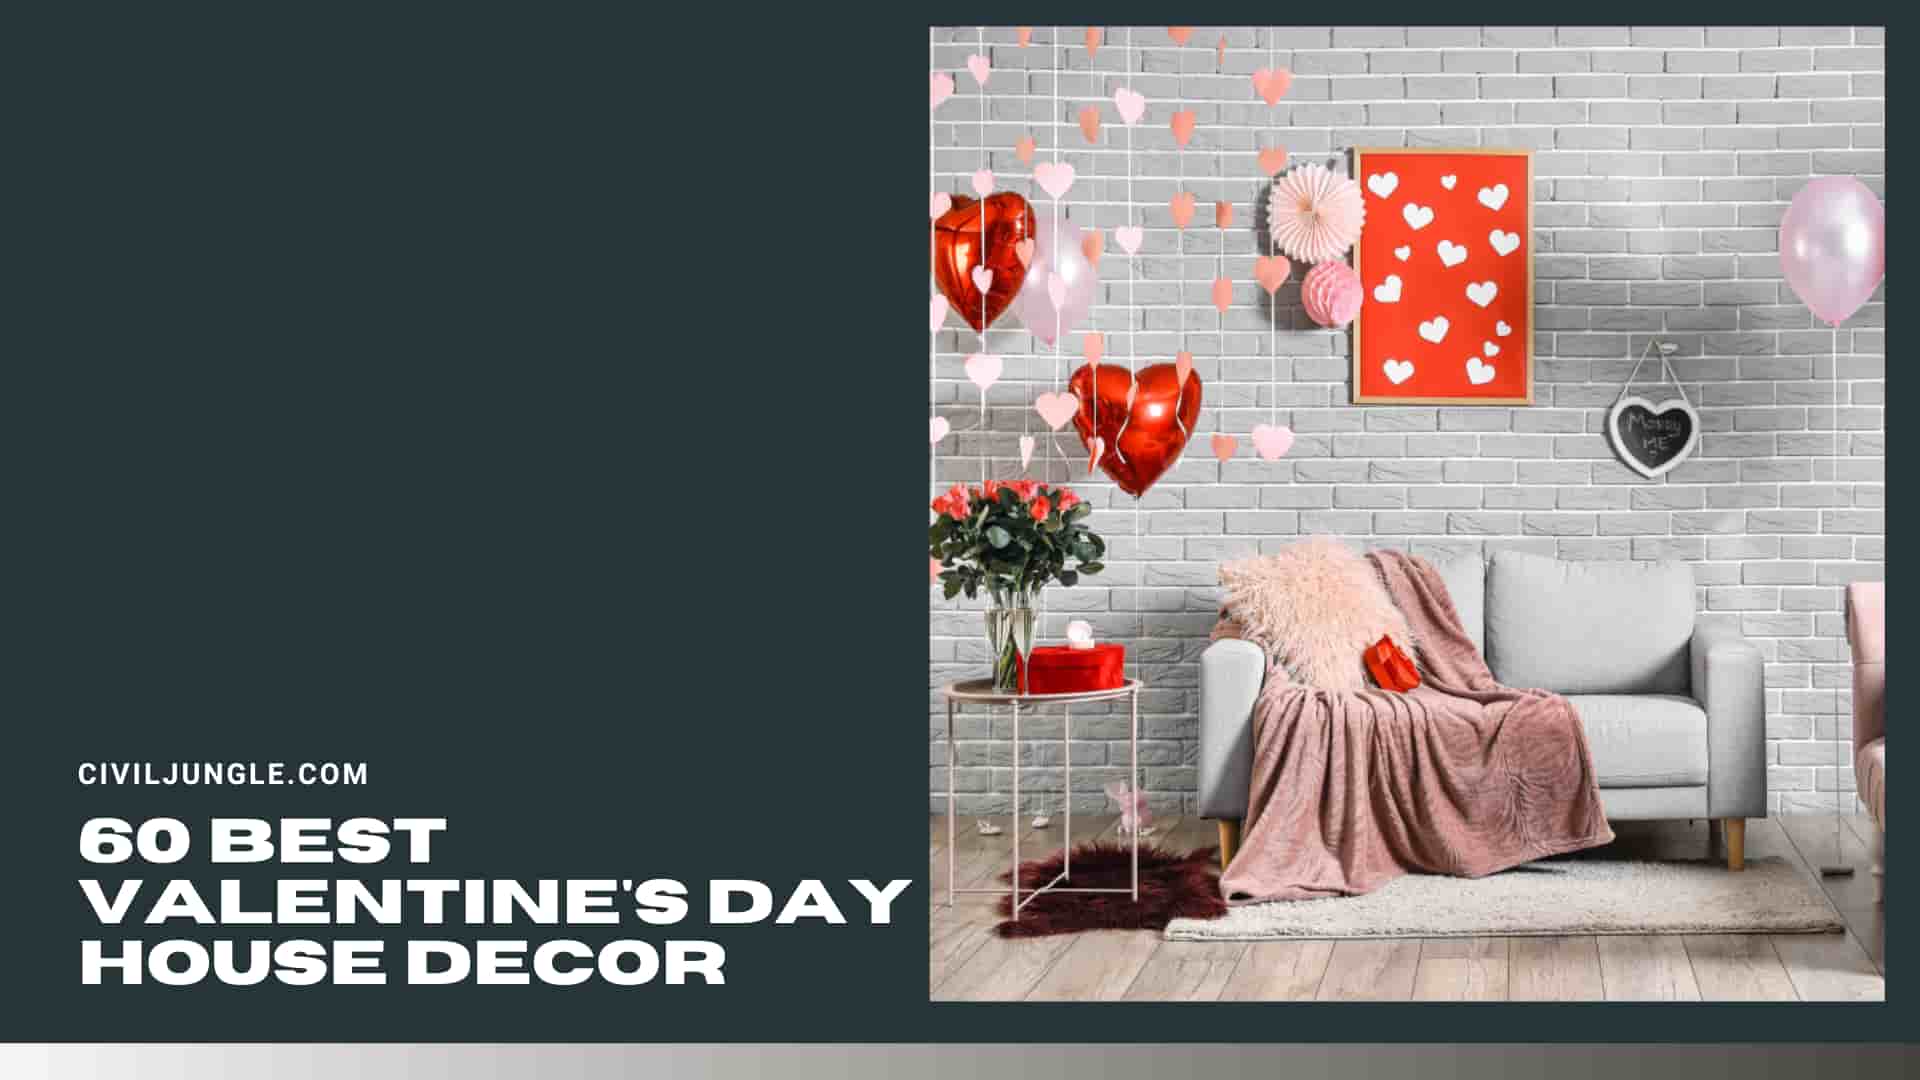 60 Best Valentine's Day House Decor